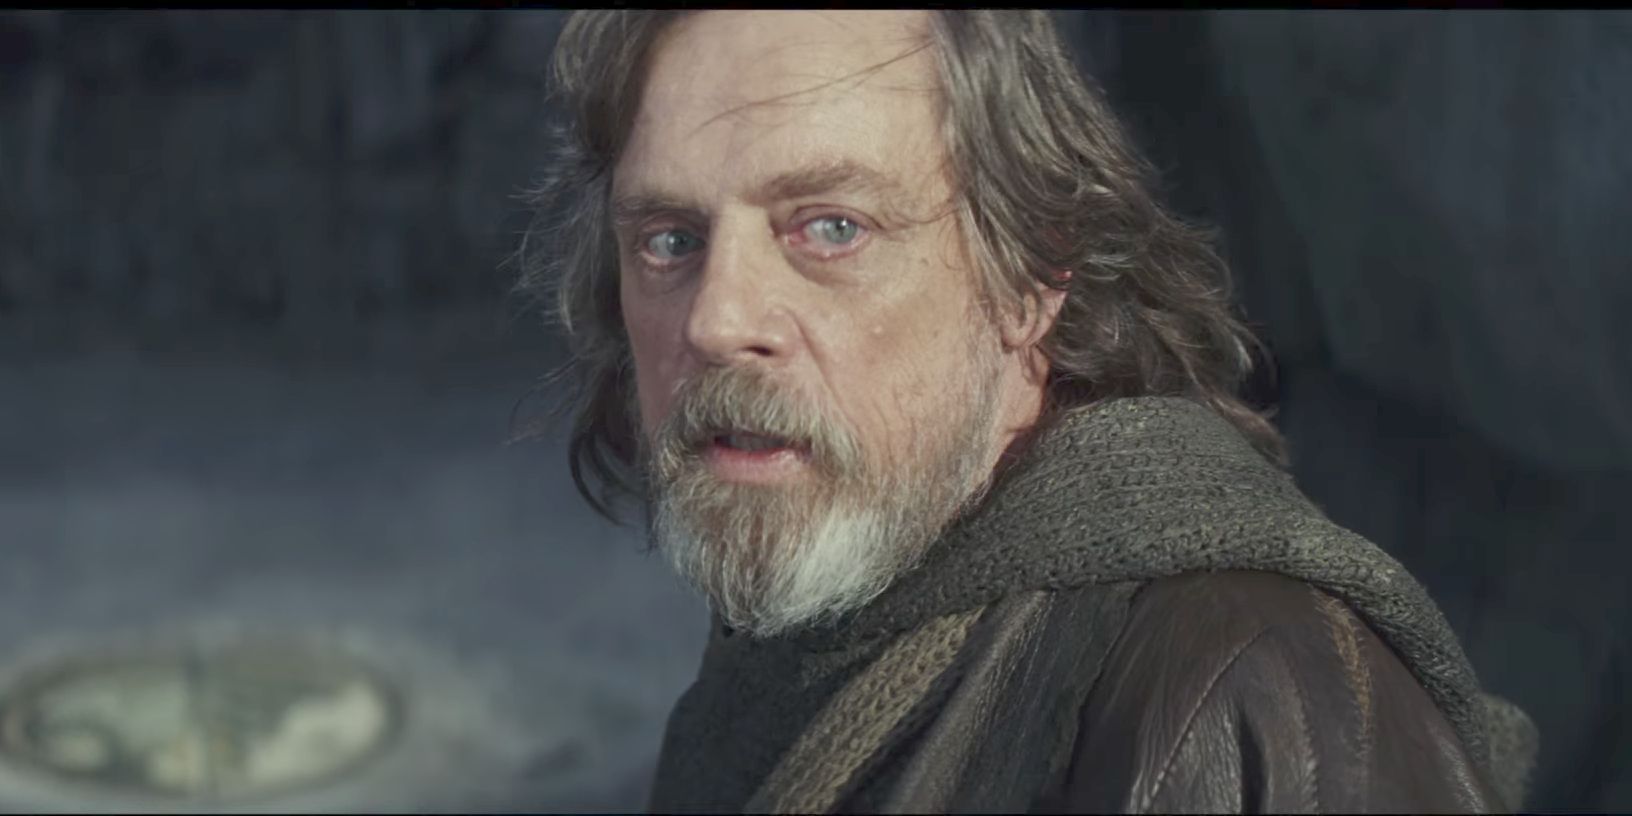 Mark Hamill as Luke Skywalker looking back in The Last Jedi.